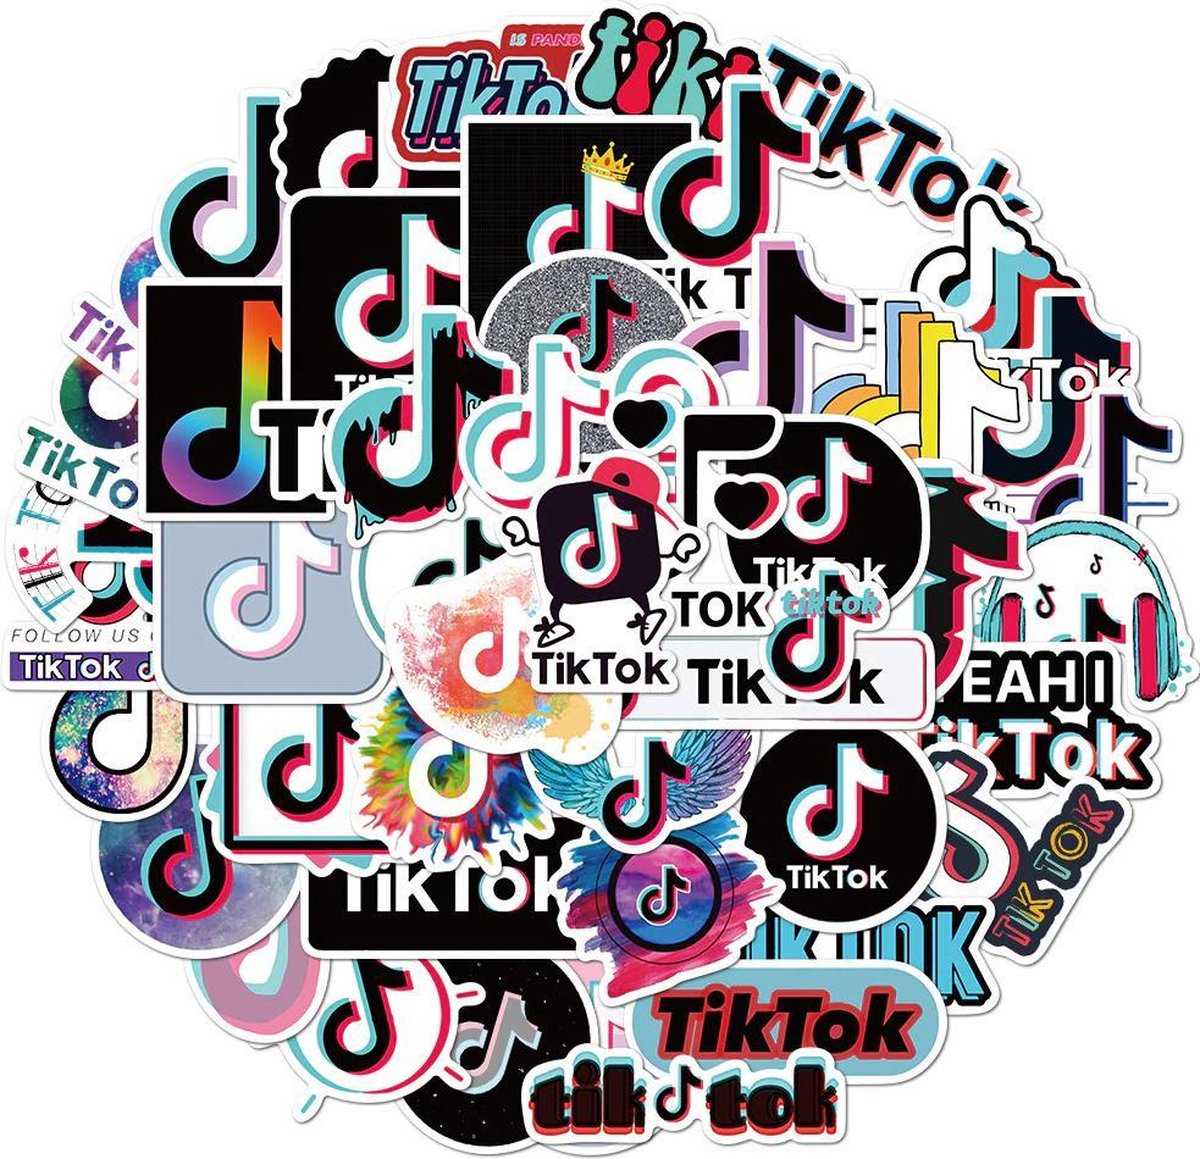 TikTok logo stickers - 50 stuks - voor laptop, muur, agenda, mobieltje etc. - Merkloos